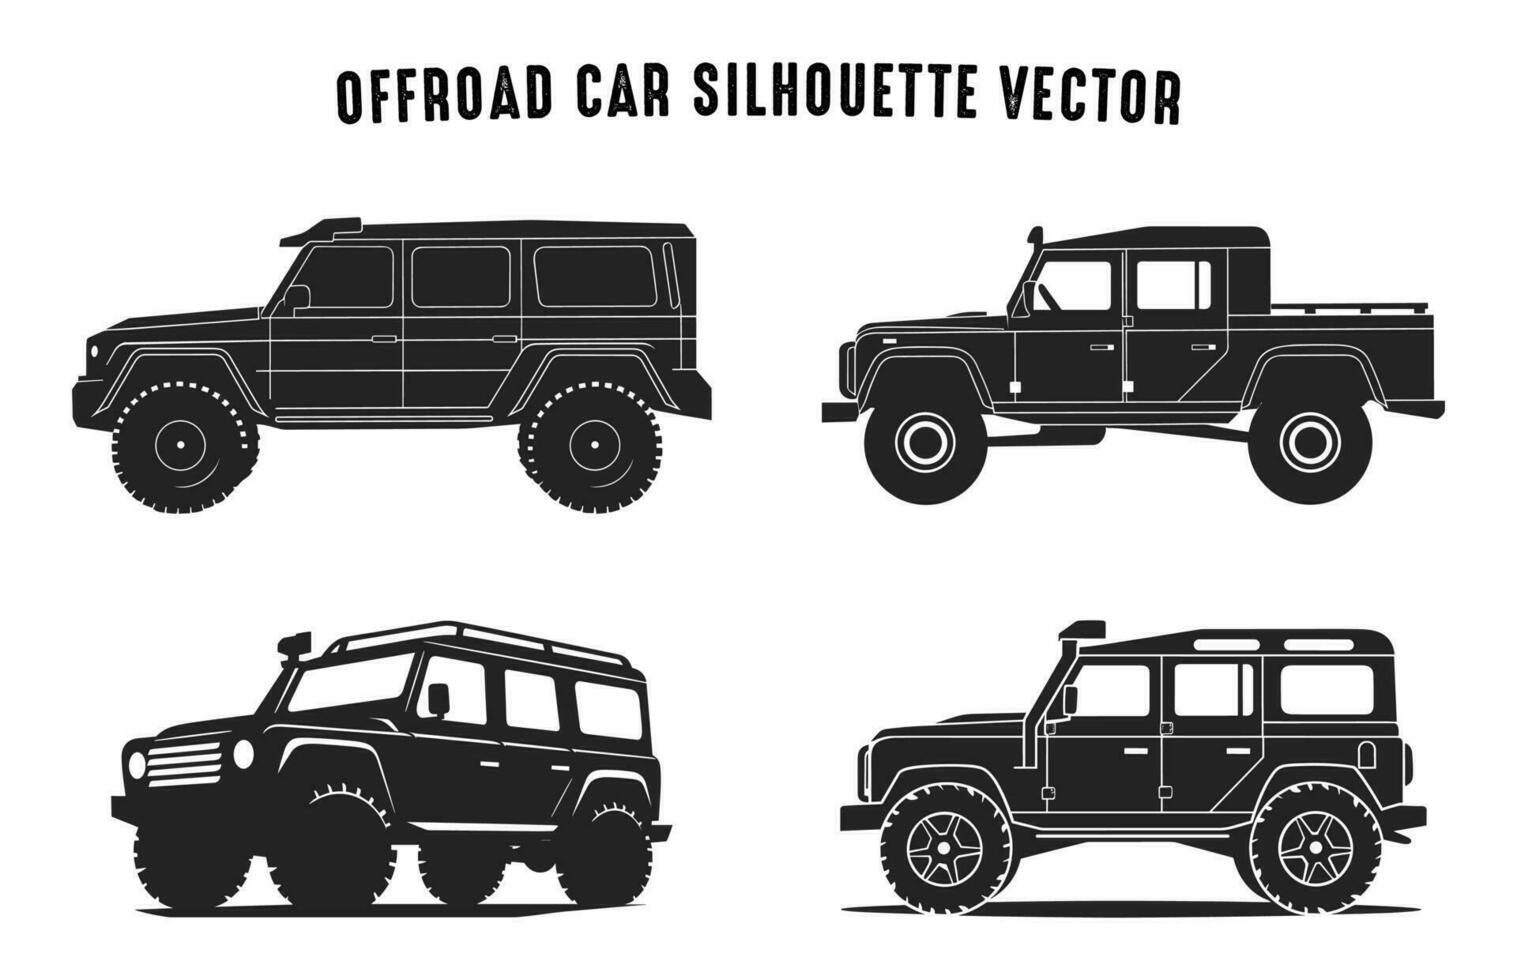 van de weg af auto vector illustratie set, auto zwart silhouetten bundel